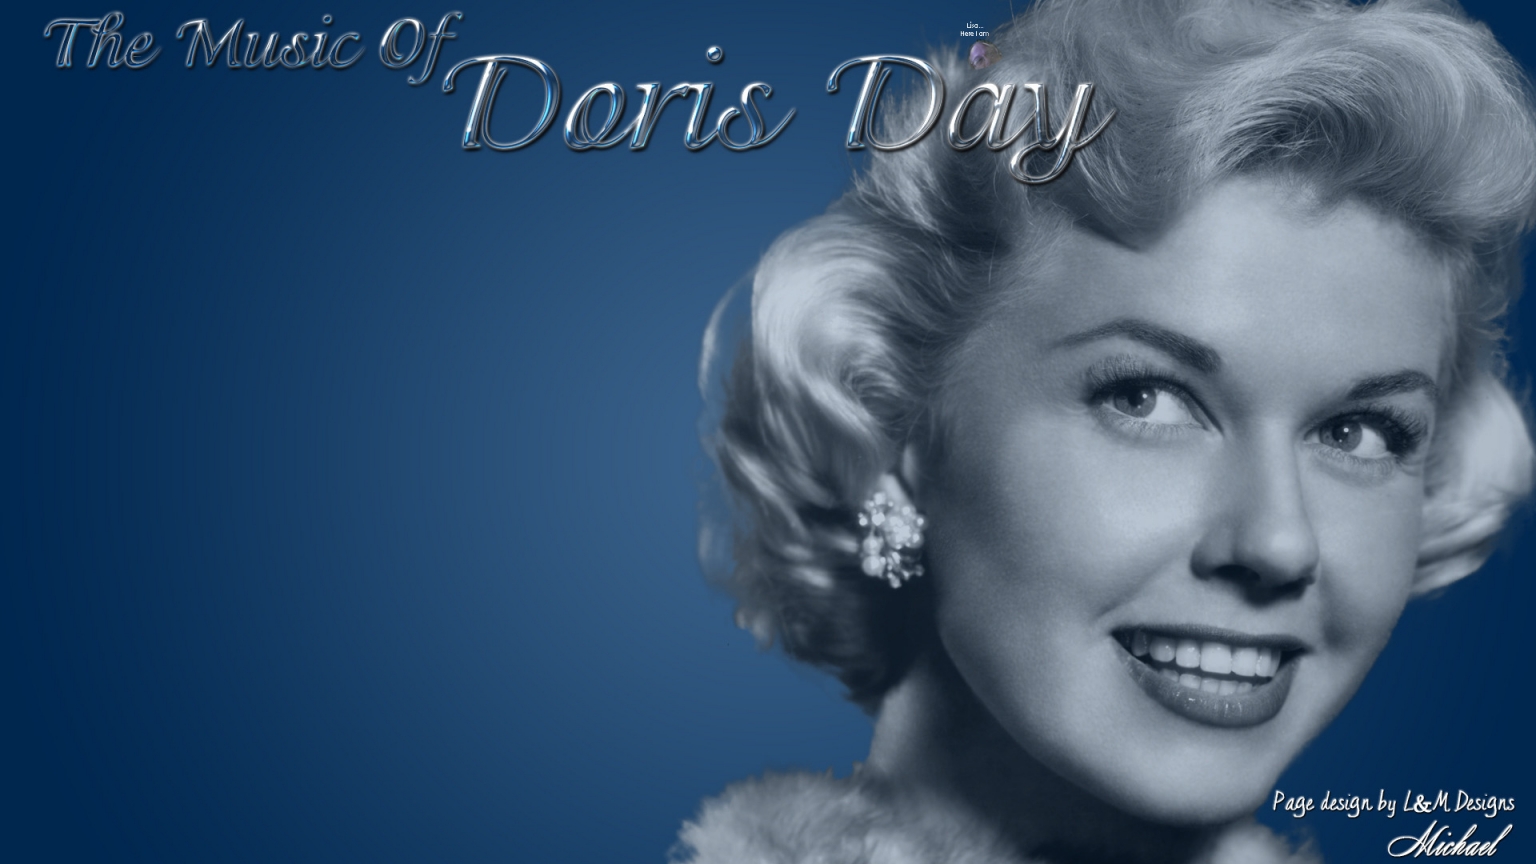 Doris Day for 1536 x 864 HDTV resolution